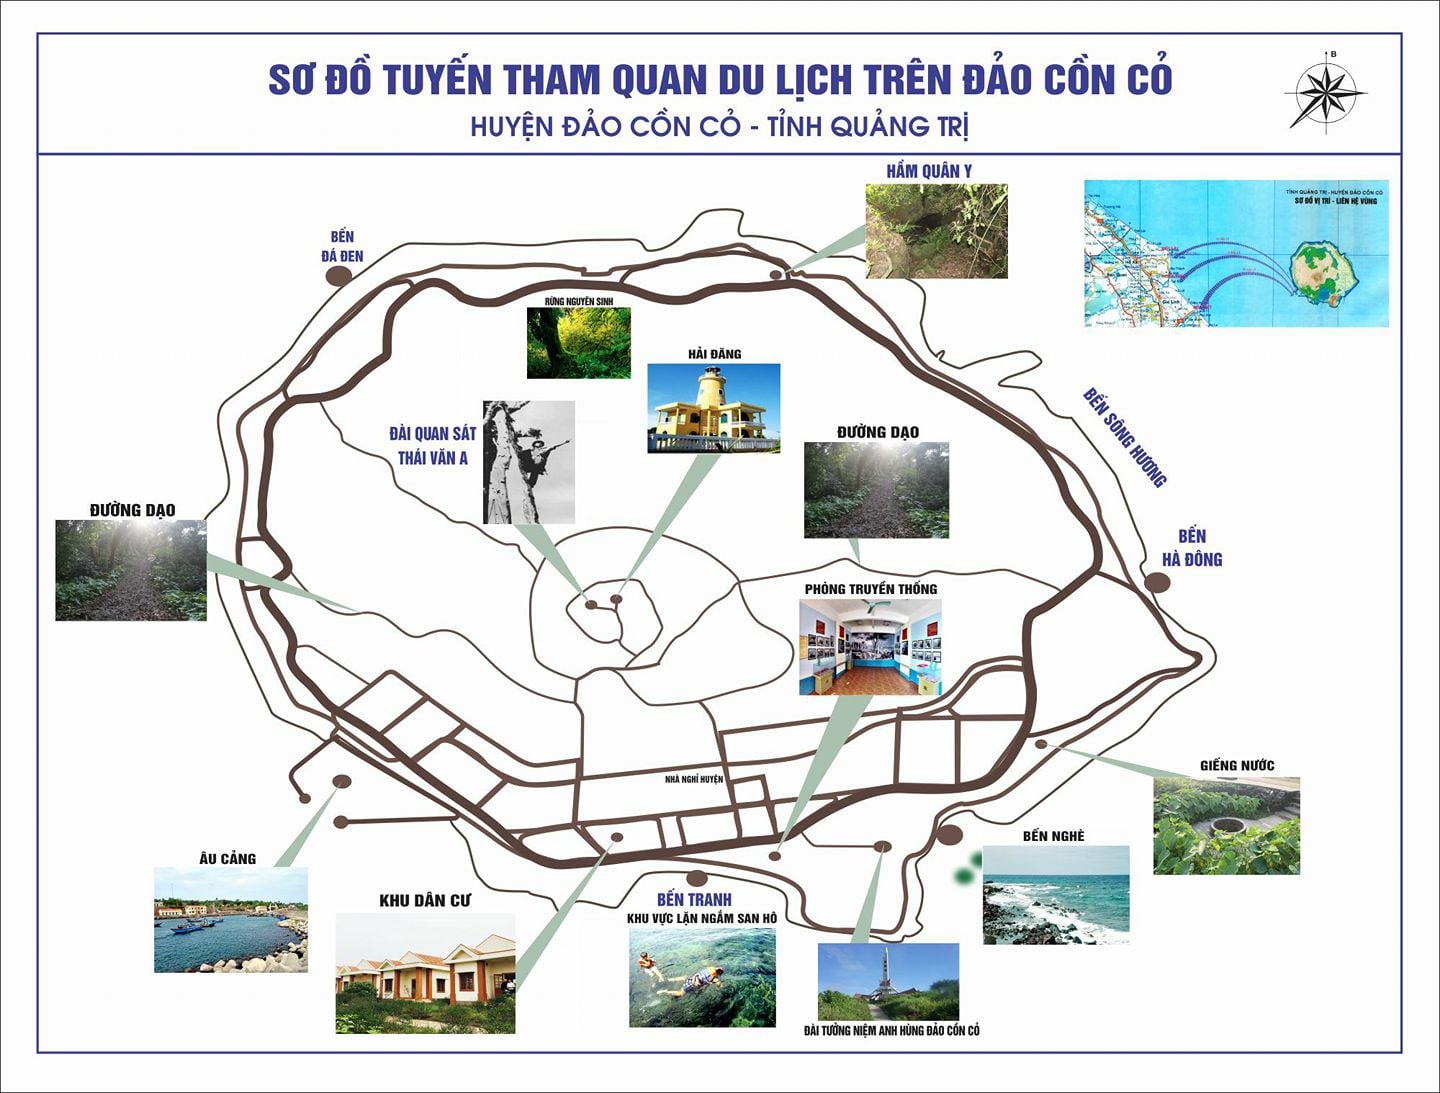 Các điểm du lịch trên đảo Cồn Cỏ, Quảng Trị